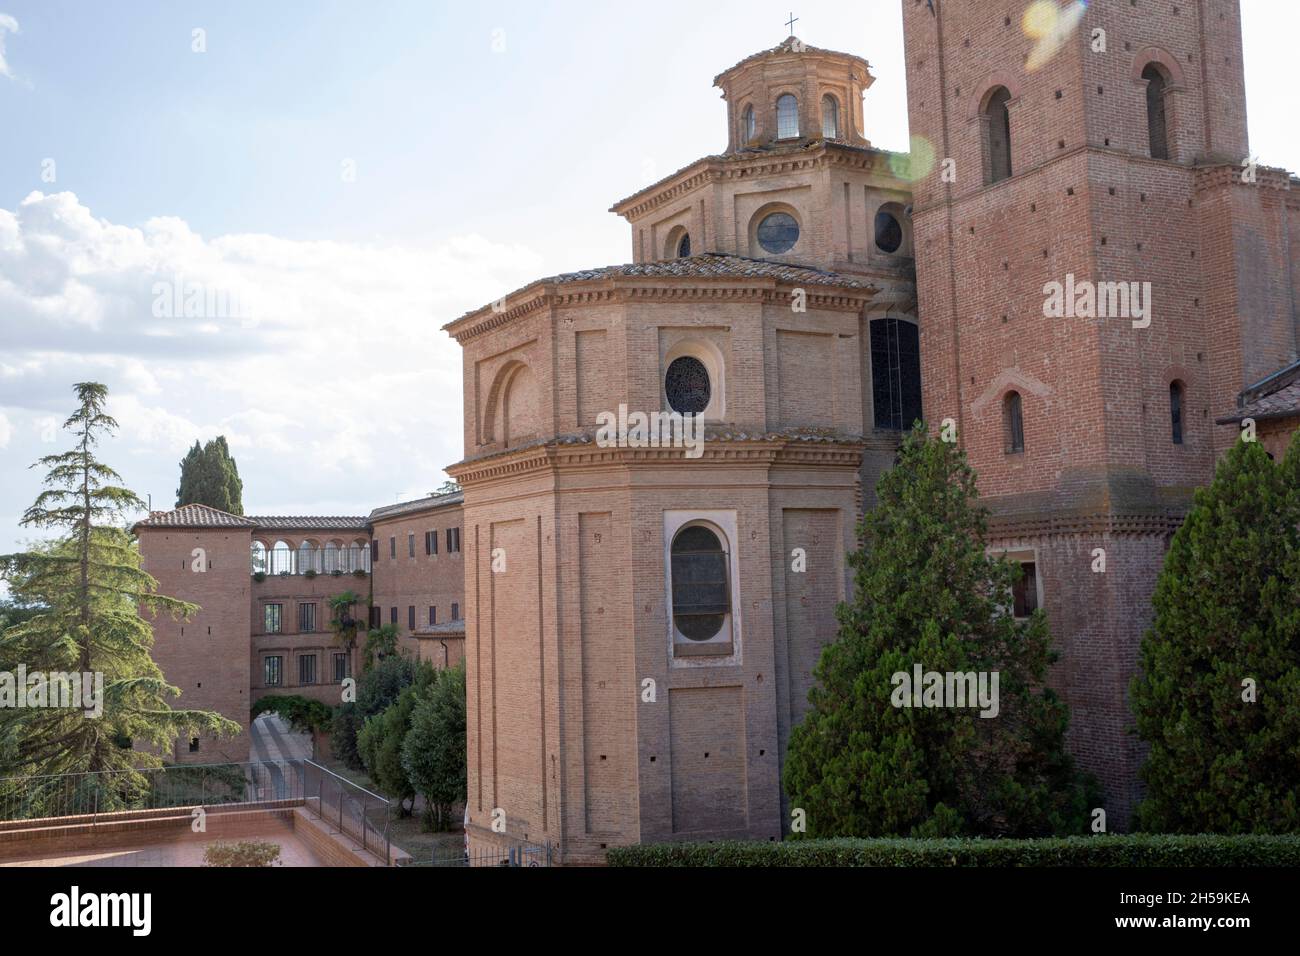 Asciano (SI), Italy - August 15, 2021: Monteoliveto Maggiore Abbey, Asciano, Siena, Tuscany, Italy Stock Photo